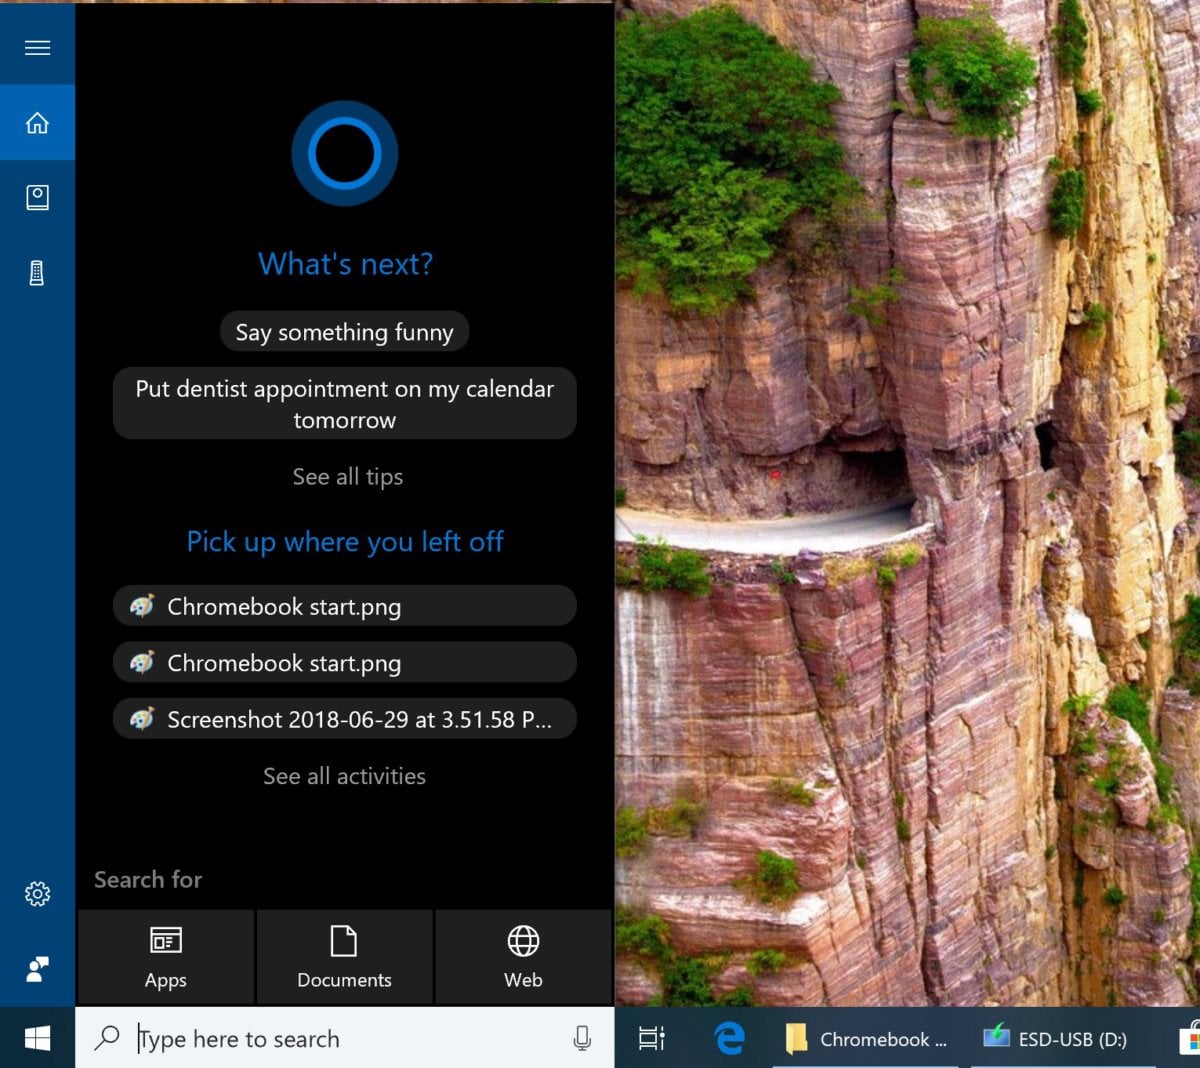 Virtuální asistentku Microsoft Cortana najdete přímo v operačním systému Windows – na rozdíl od Asistenta Google, který je dostupný pouze v zařízeních Pixelbook vyráběných přímo firmou Google.